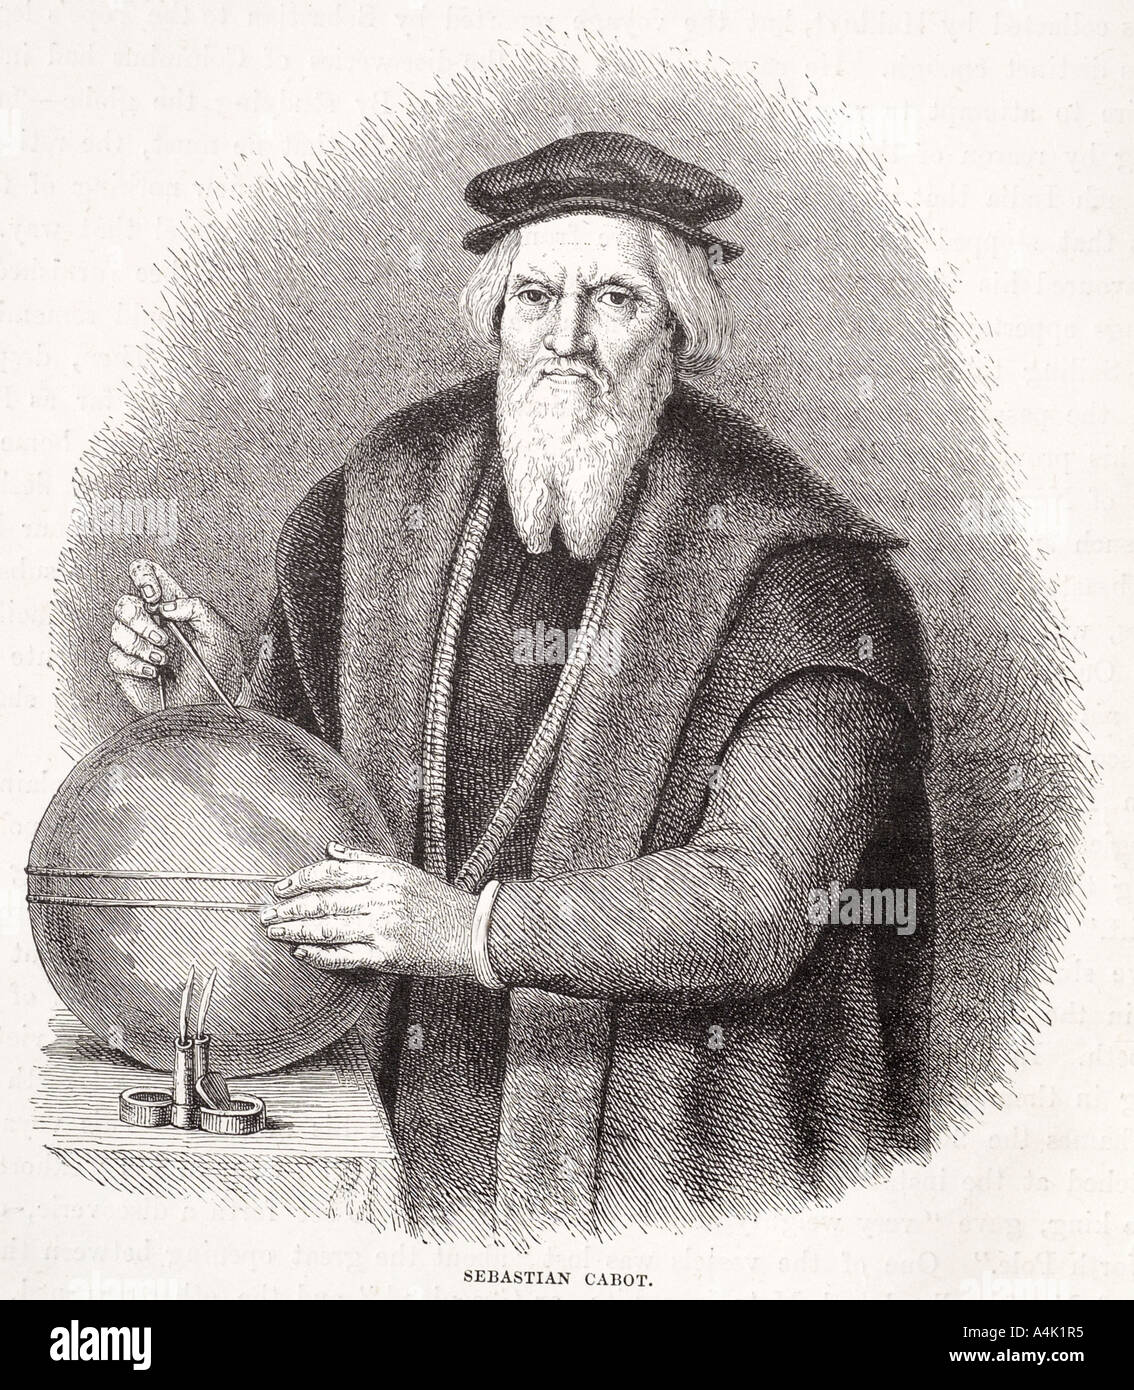 Sébastien Cabot F Rawle 1474 1557 Canada découvert vénitien navigator cartographe cartographe globe marine portrait explorer nau Banque D'Images